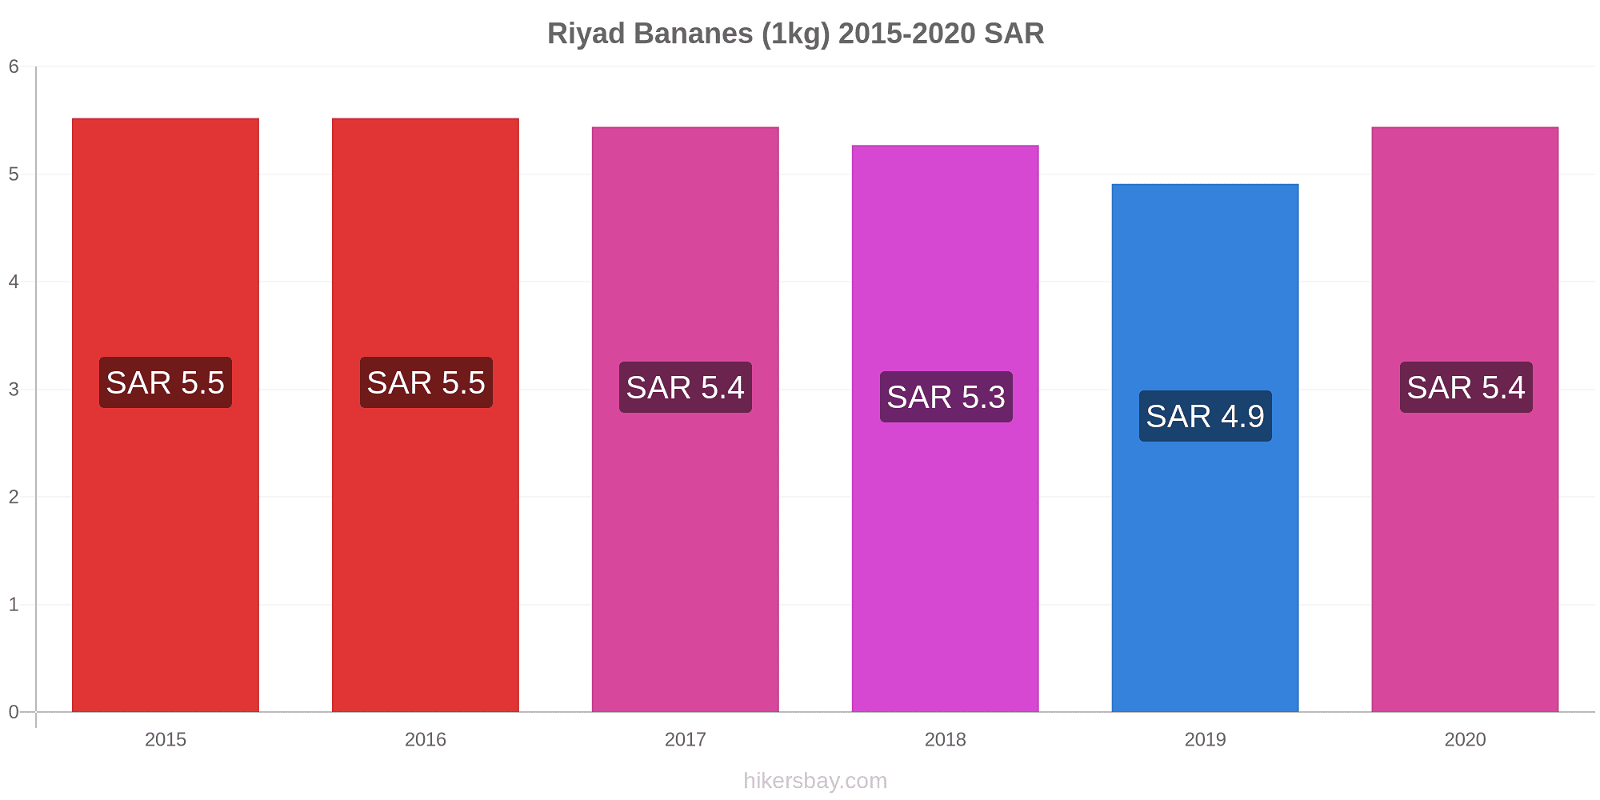 Riyad changements de prix Bananes (1kg) hikersbay.com